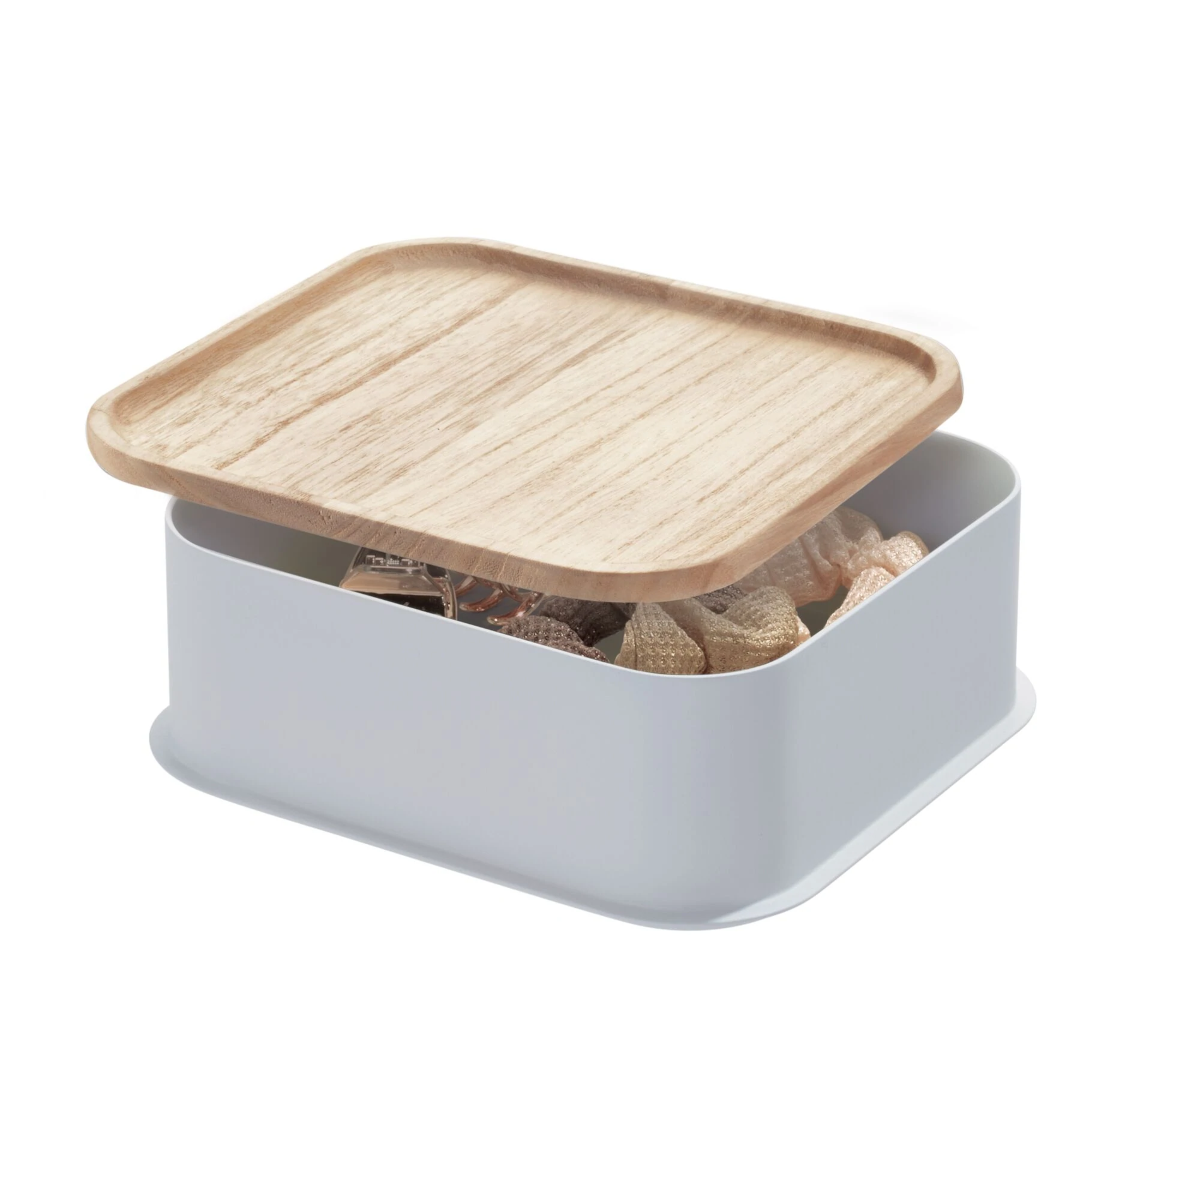 Bac de rangement Eco avec couvercle en bois 8.4' x16,9'' de Interdes -  Ares Accessoires de cuisine